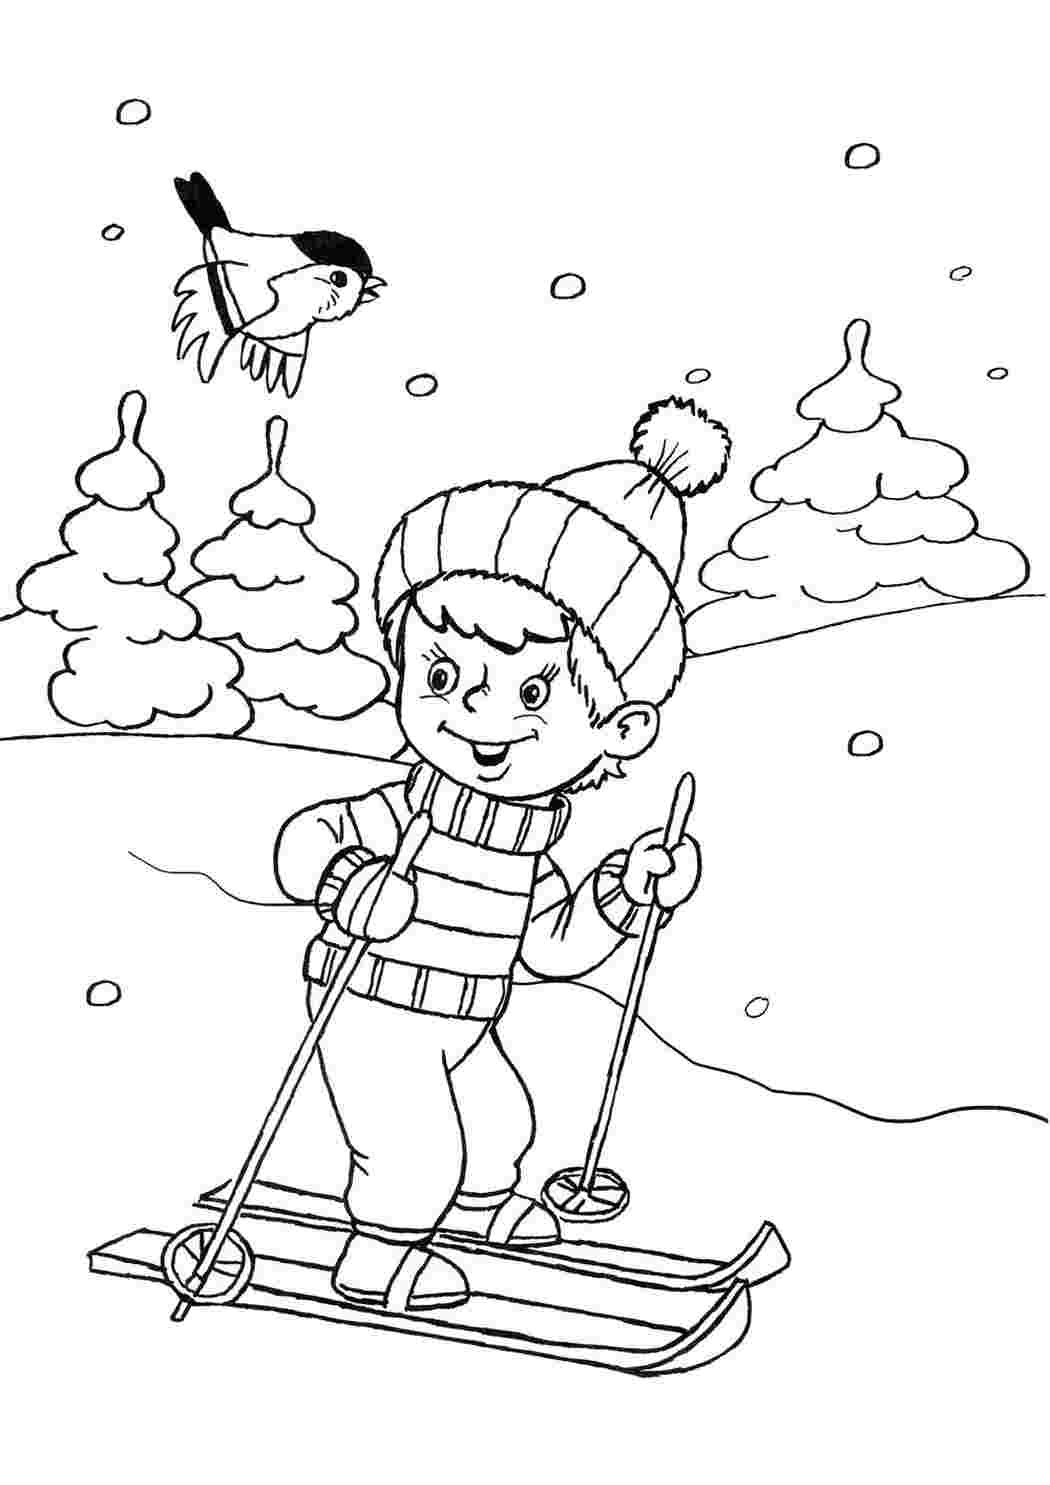 100 загадок про зиму для детей и взрослых с ответами